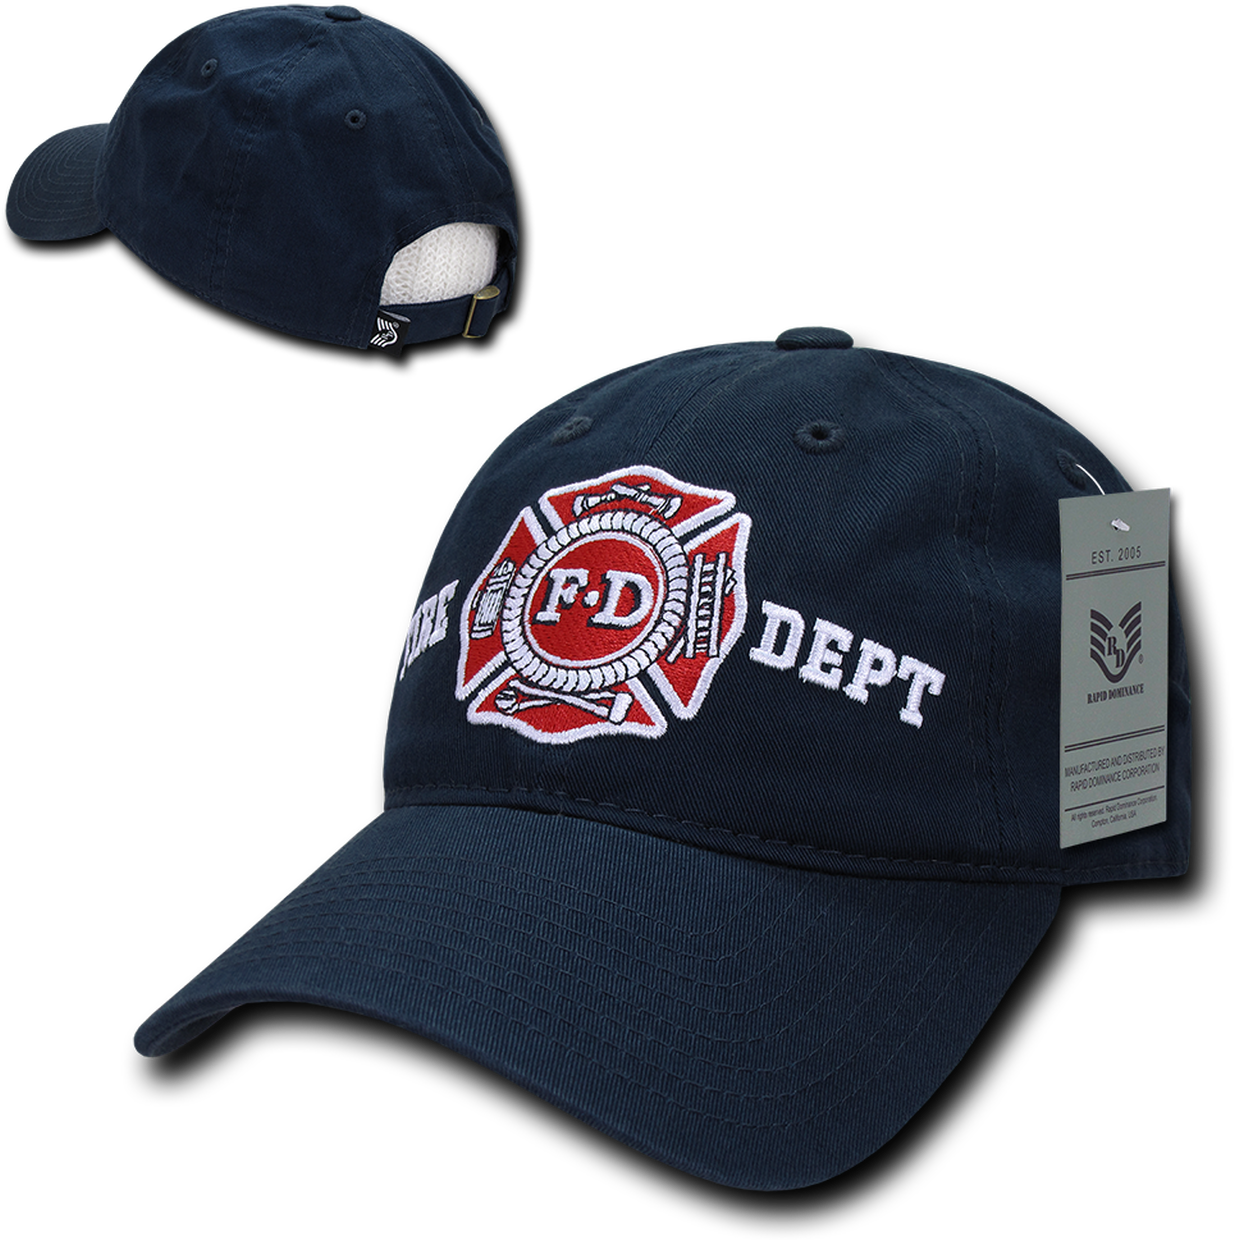 Fire Department Baseball Cap